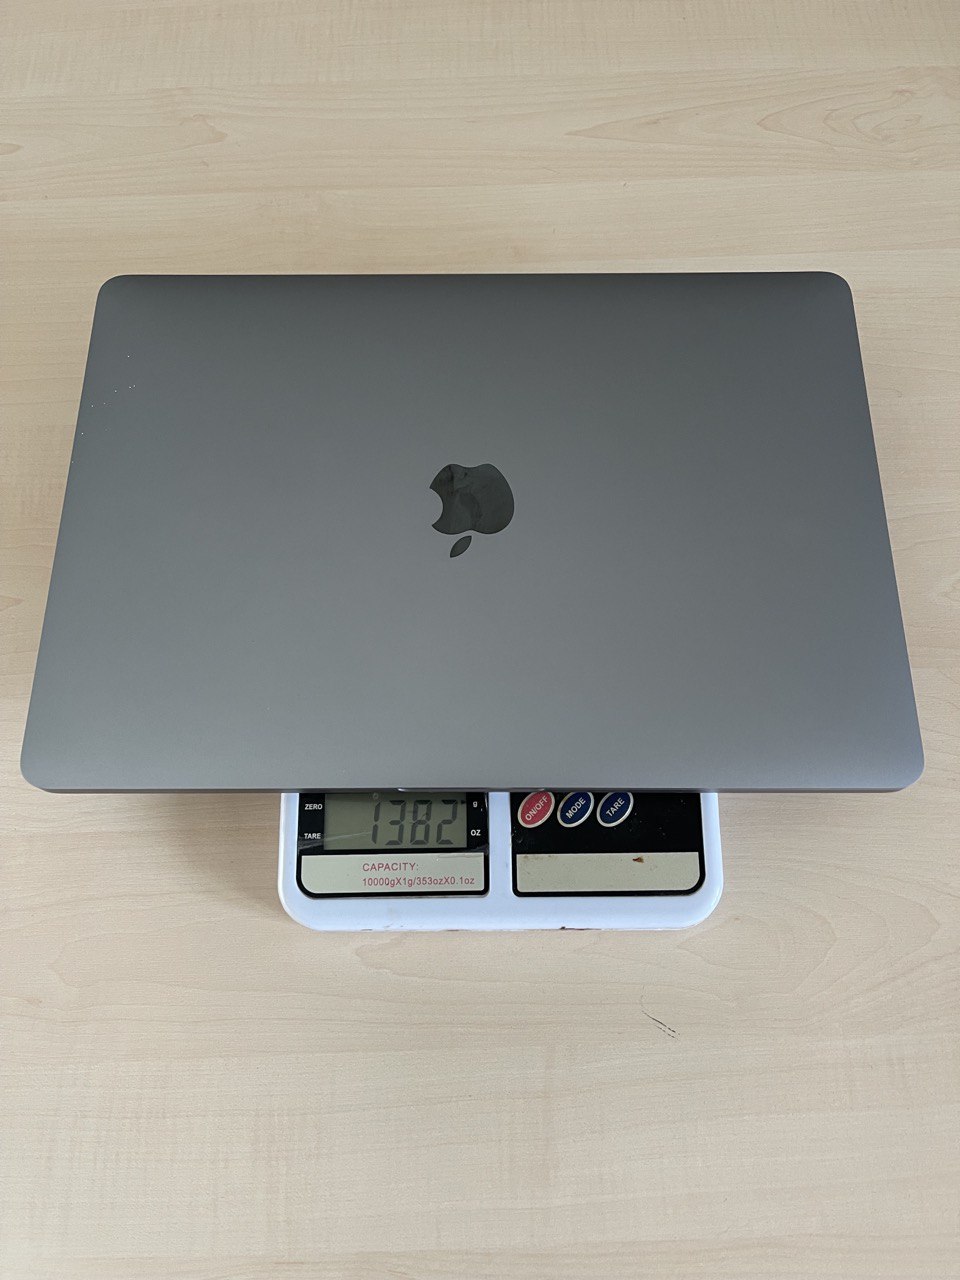 Berapa berat MacBook Pro 13 inci jika dibagi 1